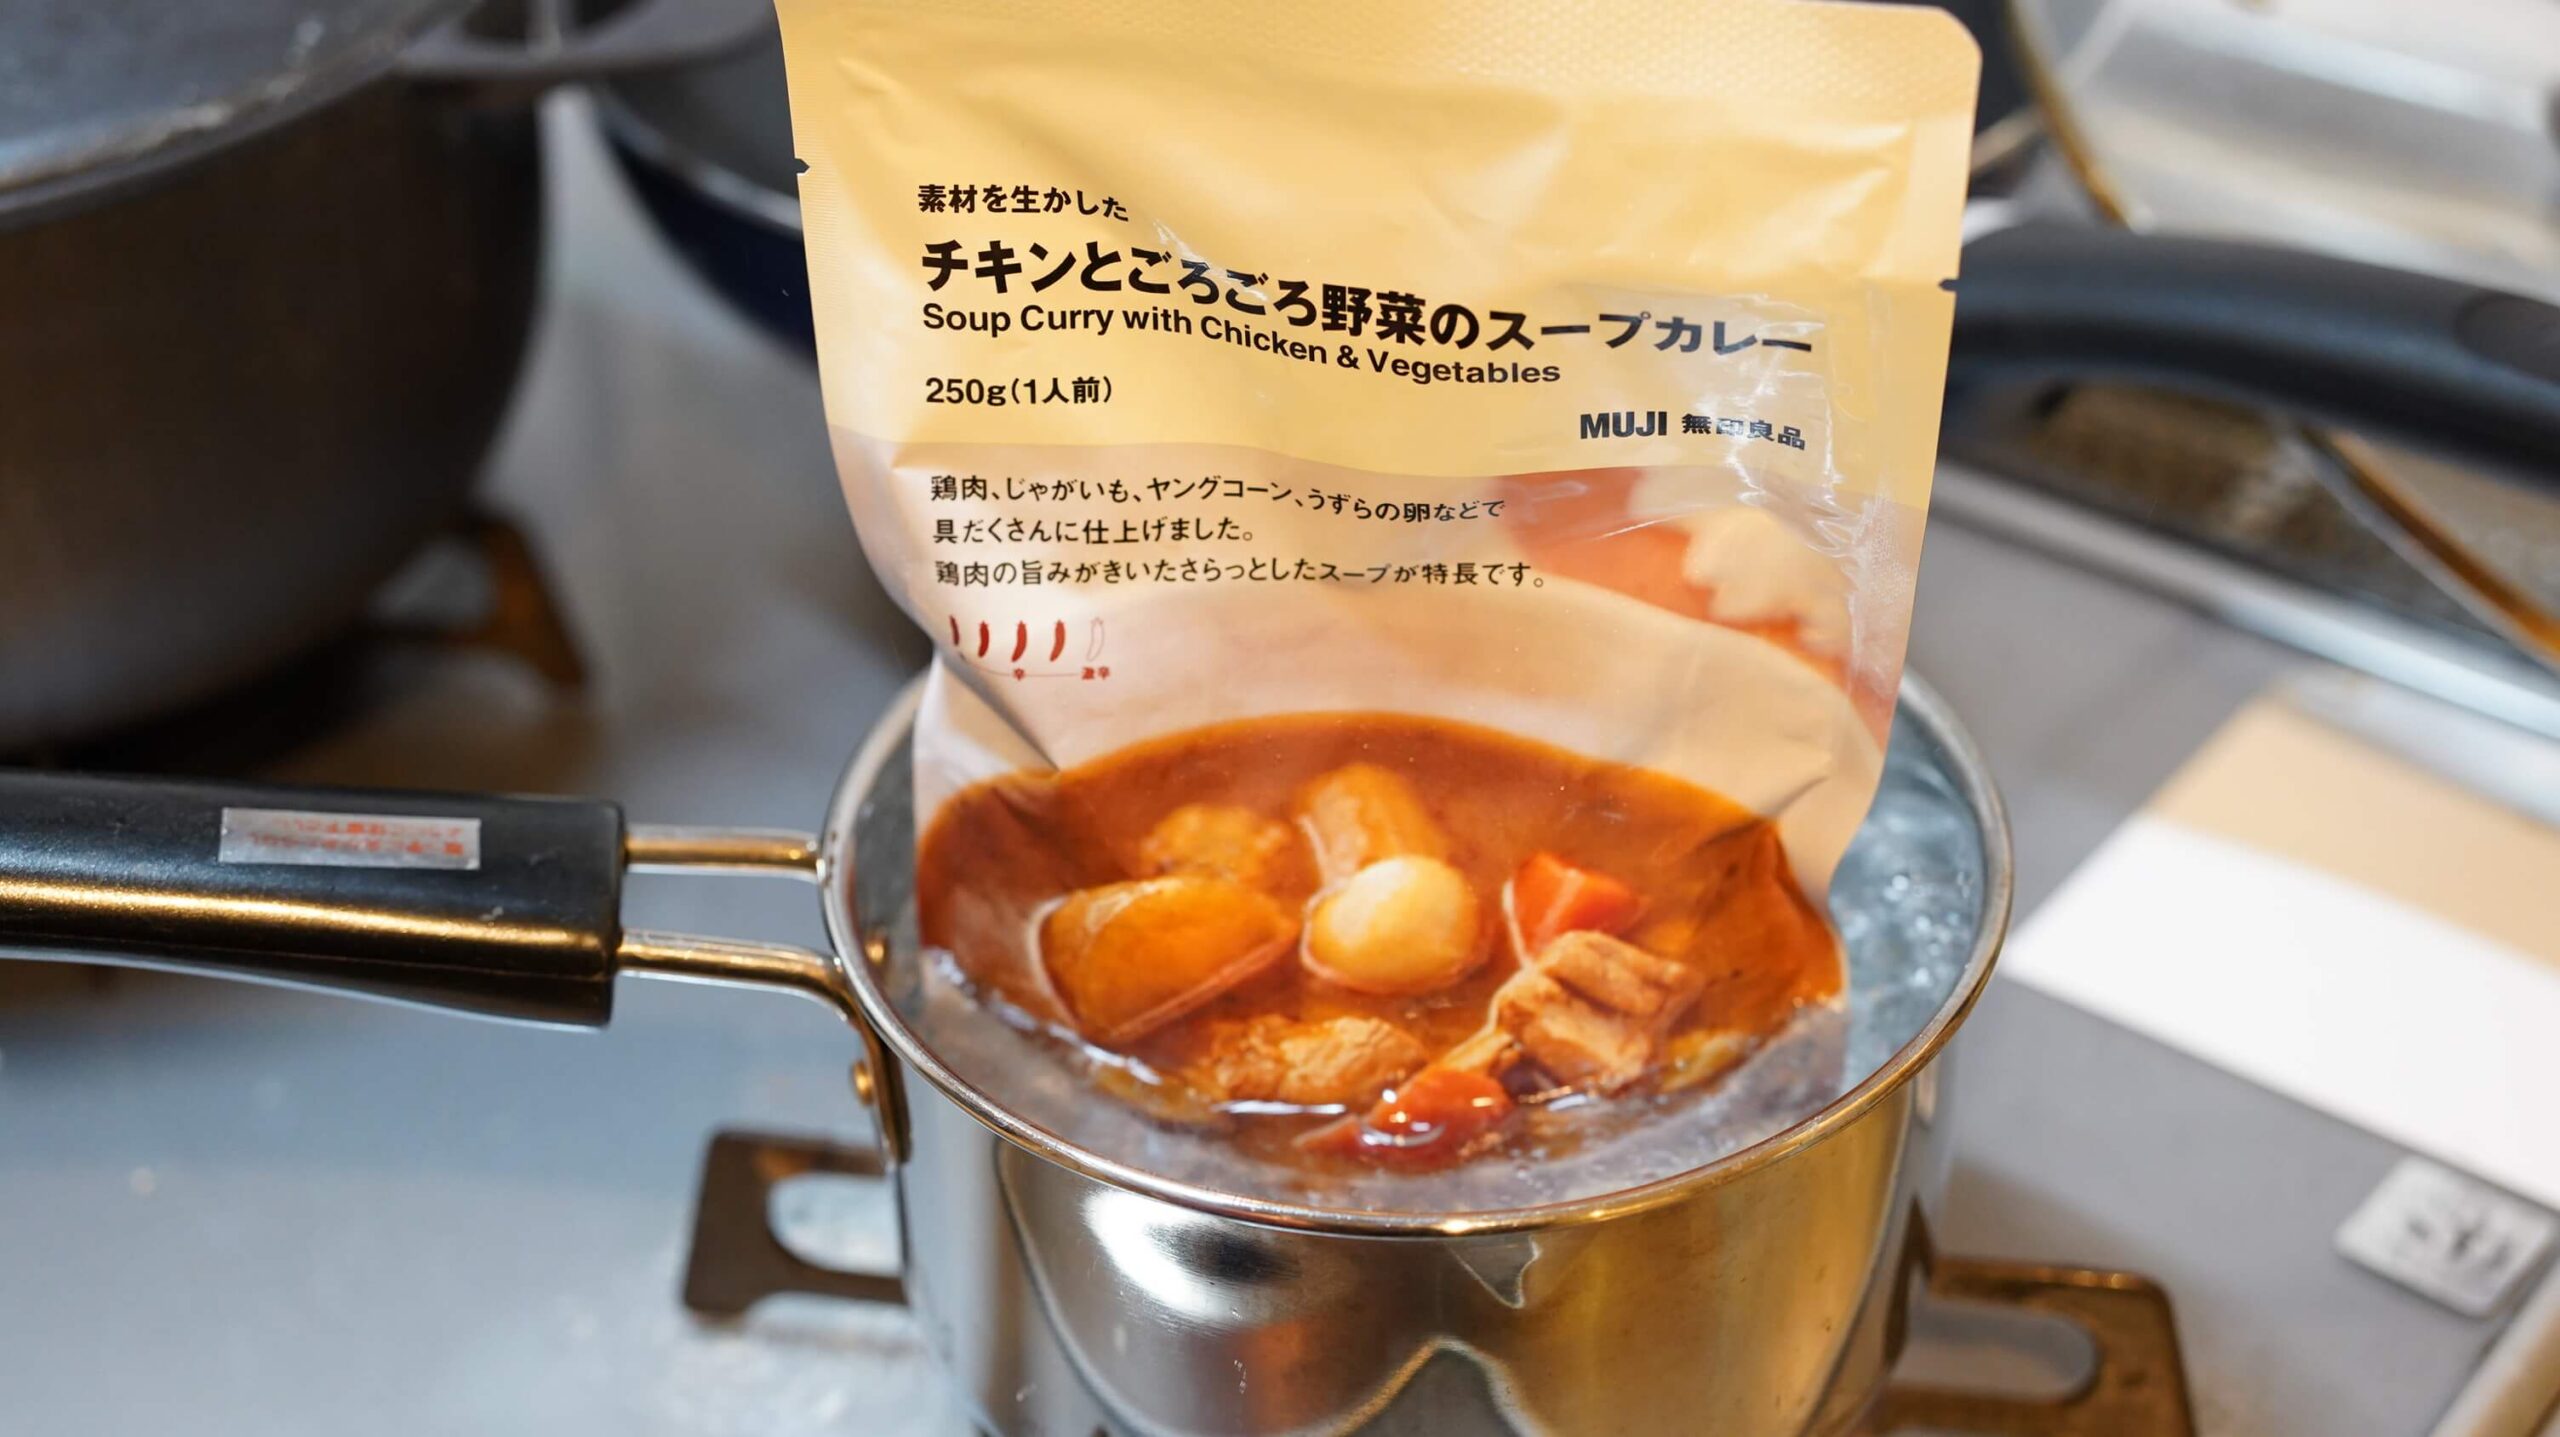 無印良品のカレー「チキンとごろごろ野菜のスープカレー」を湯煎で加熱している写真